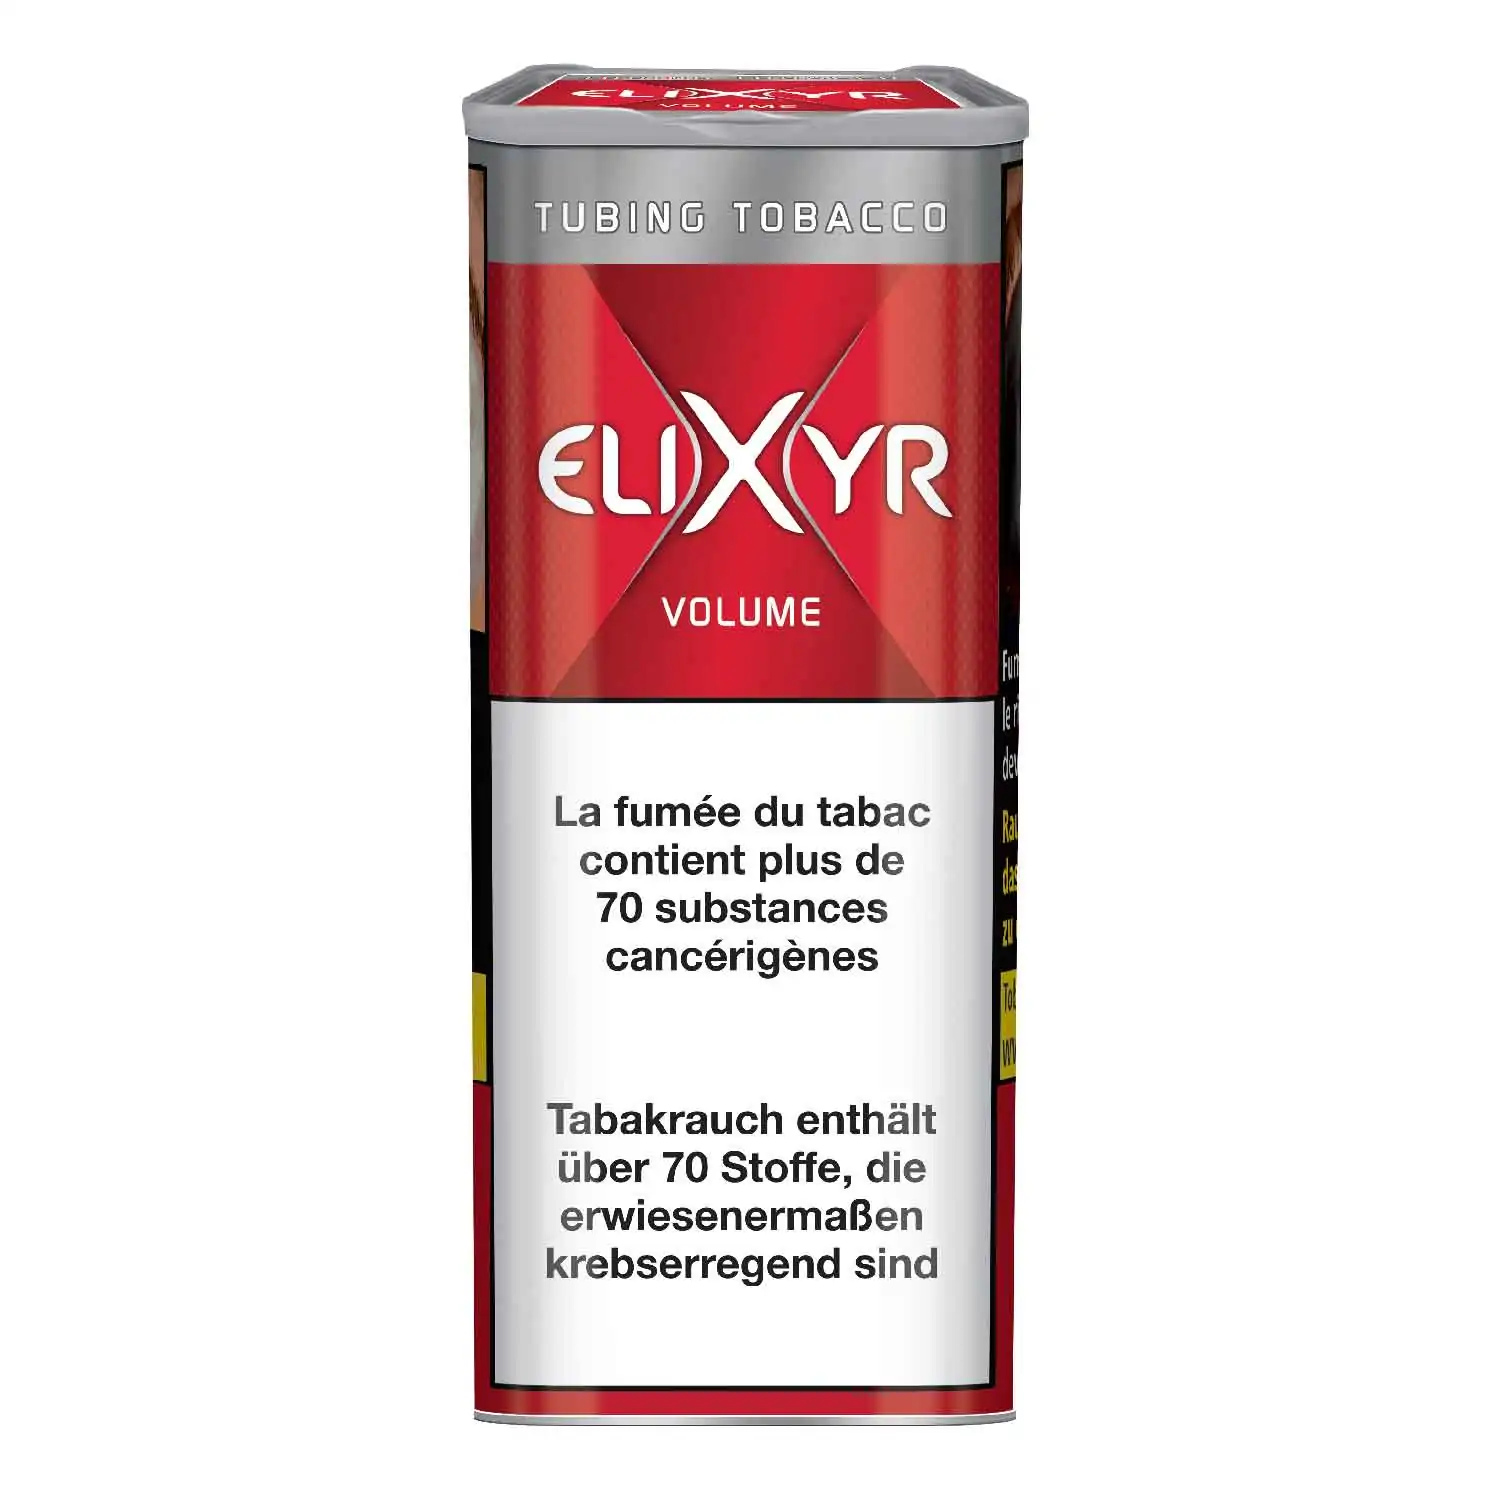 Elixyr volume maxx125g - Buy at Real Tobacco